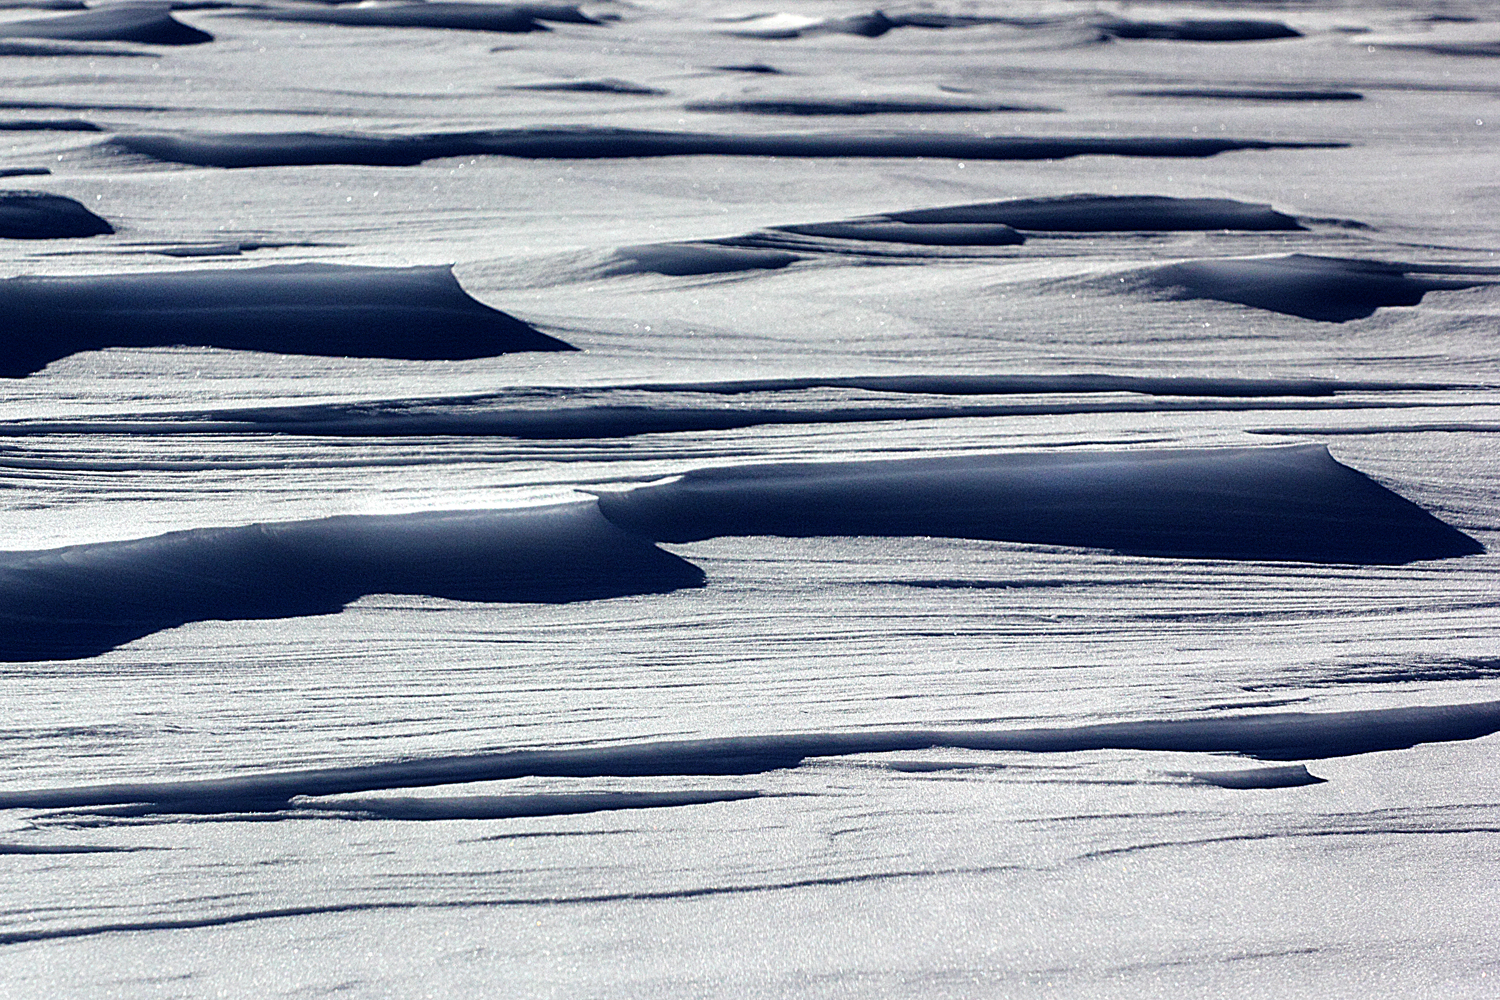 Figure 2 - Windblown peak on a field of snow, 2013 (c) DEWolf